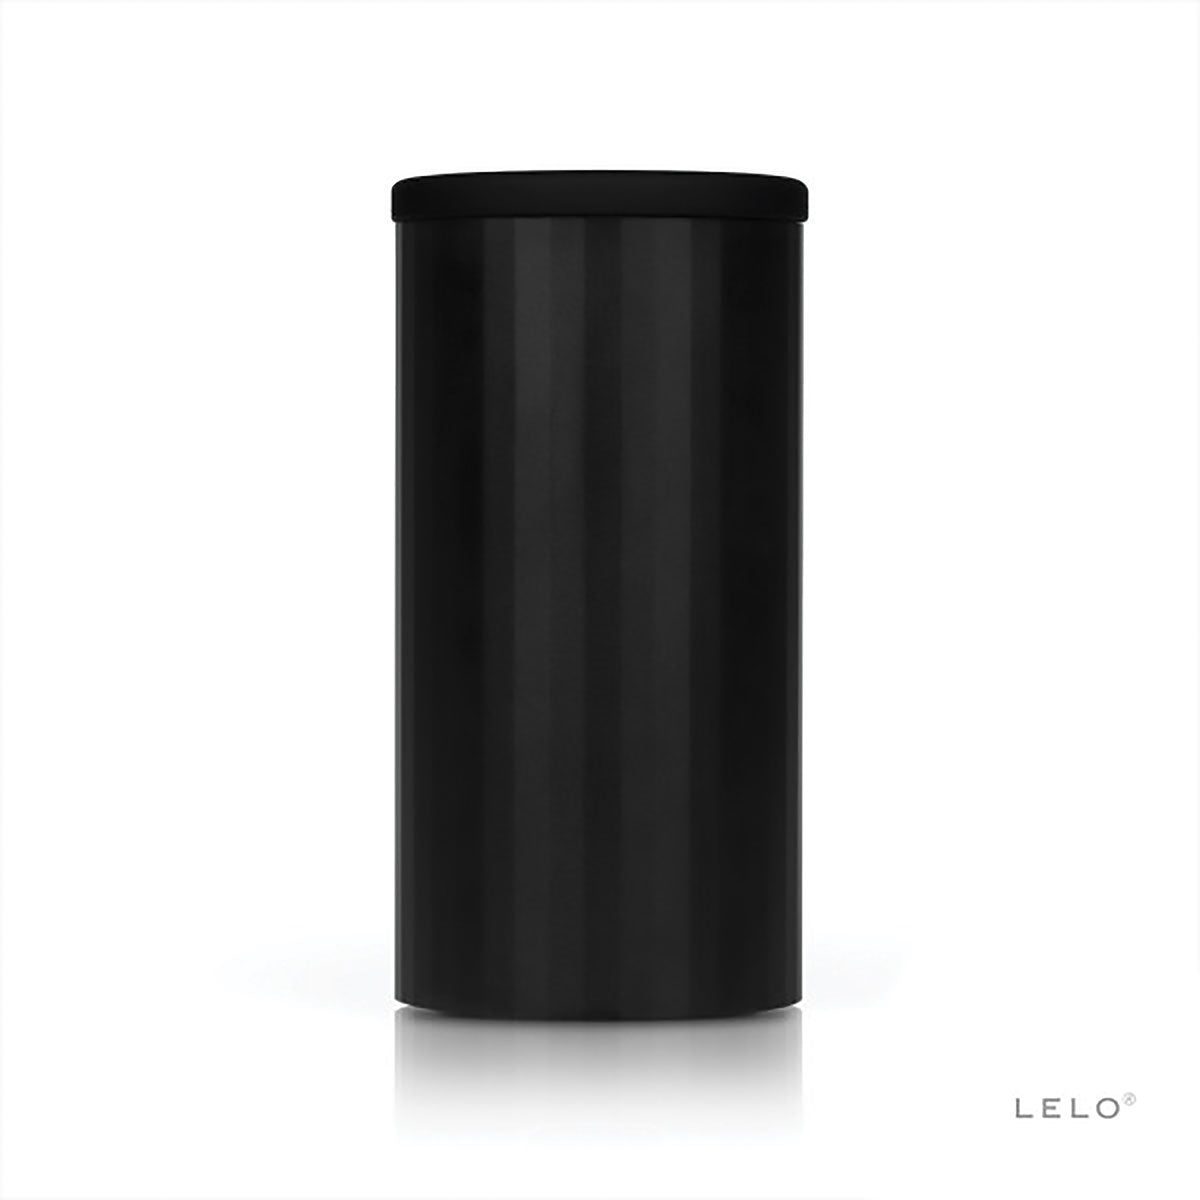 LELO F1s Developers KIT Black